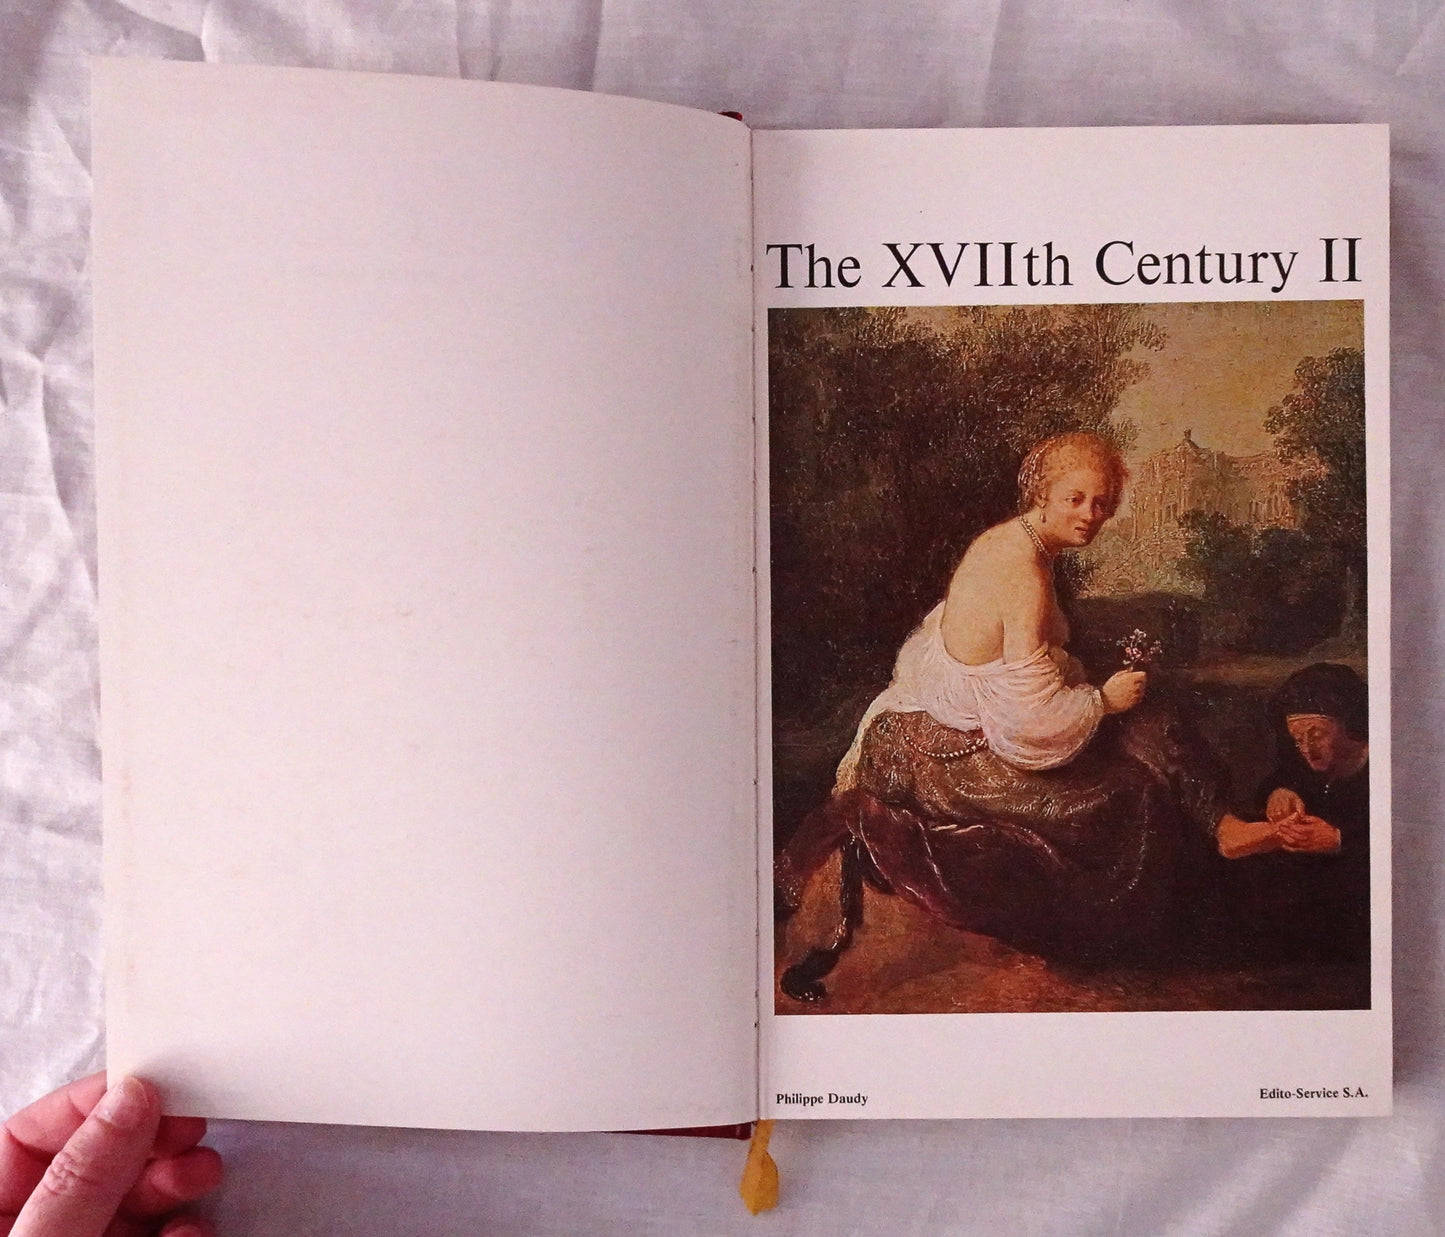 The XVIIth Century II by Philippe Daudy